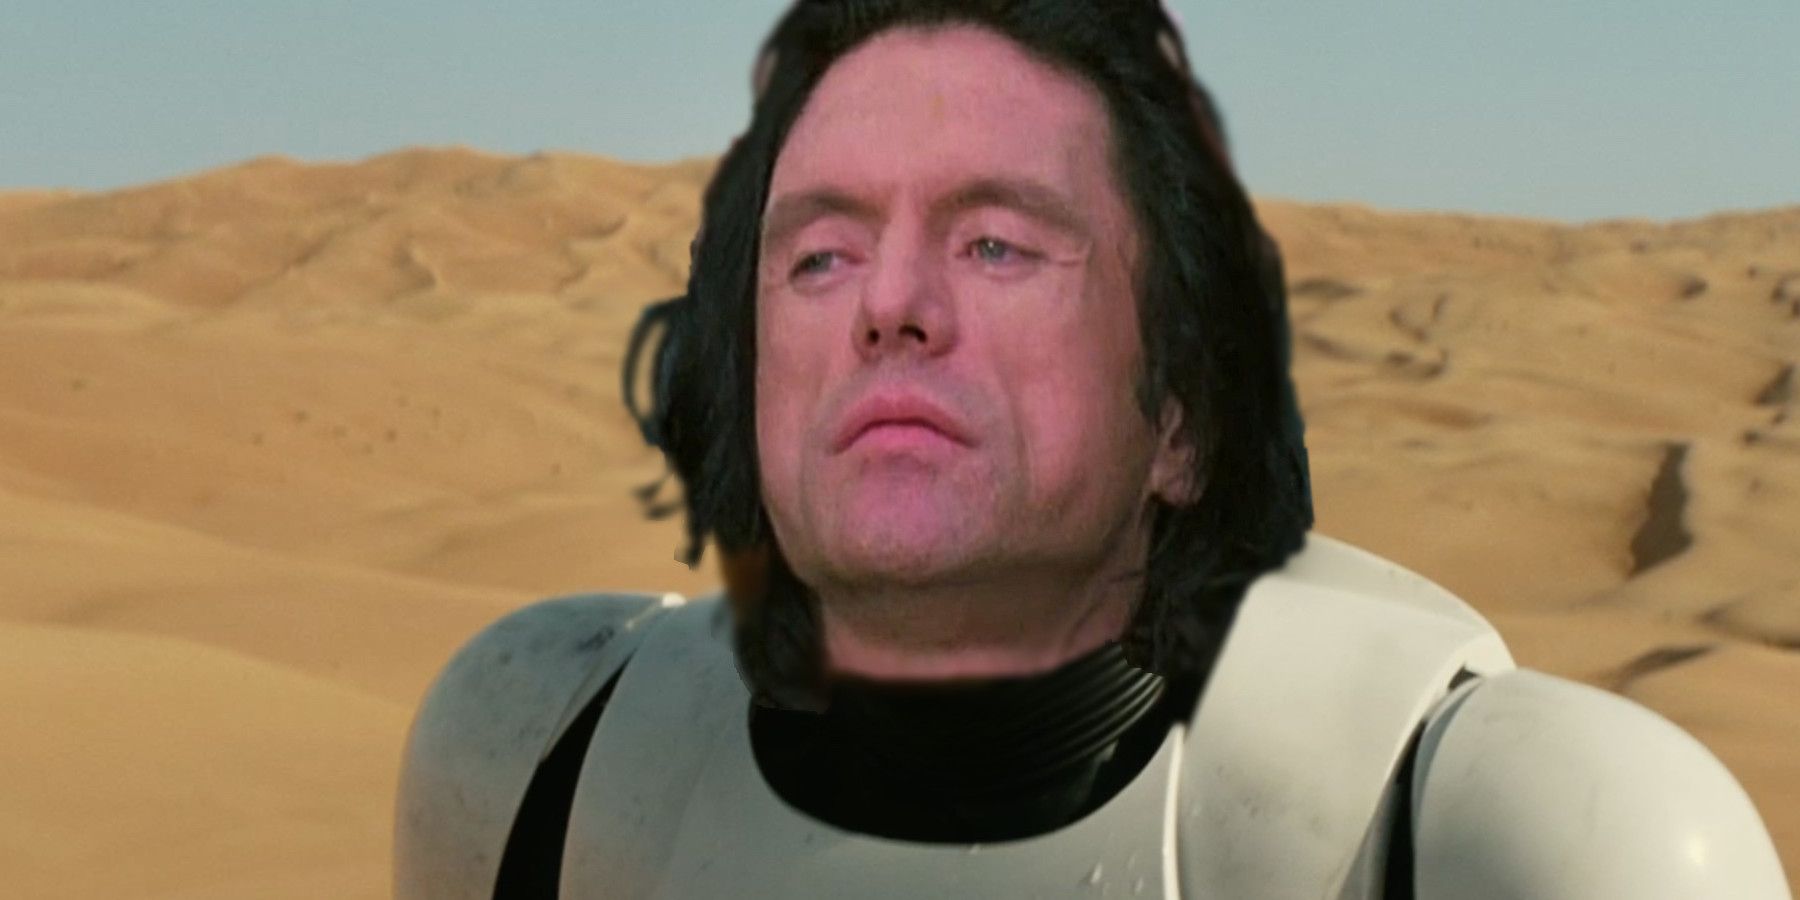 Tommy Wiseau in Star Wars as a Stormtrooper